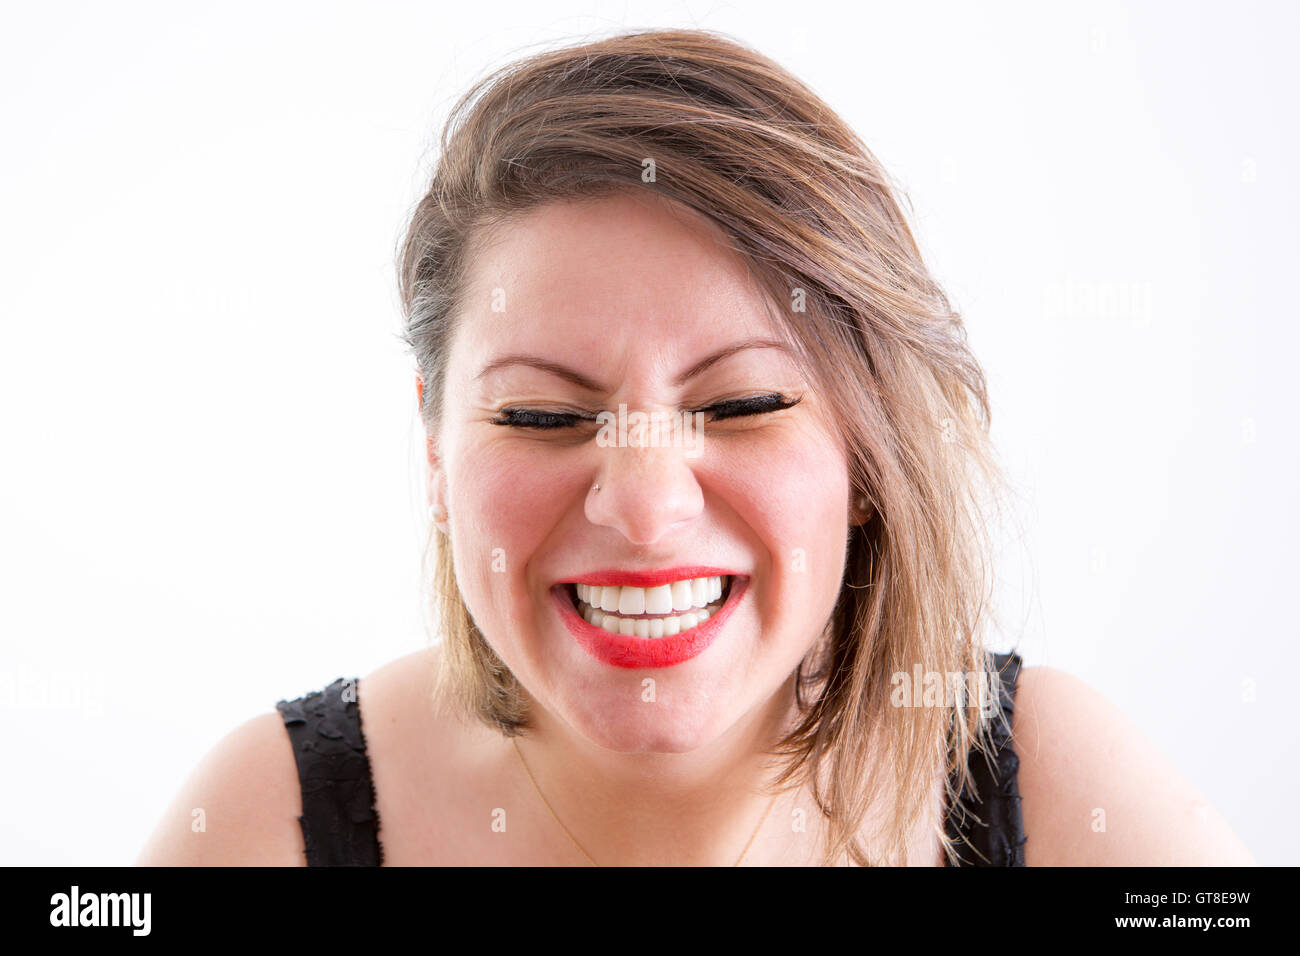 Close up visage d'une femme blonde en rire à pleines dents, les yeux fermés, face à l'appareil photo, sur un fond blanc. Banque D'Images